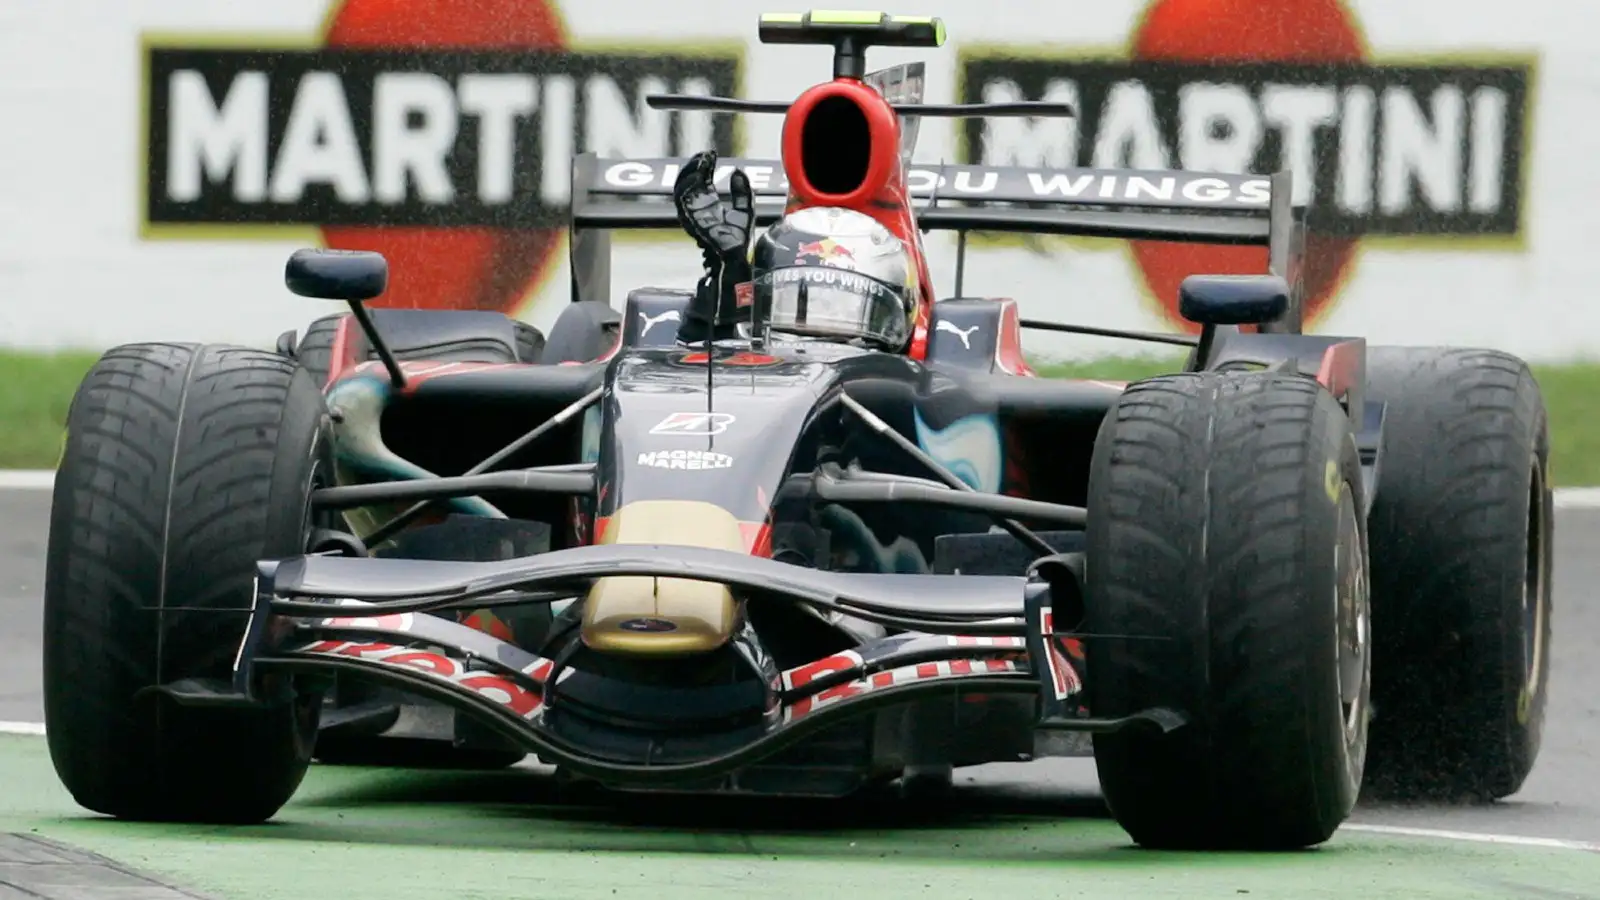 Toro Rosso's Sebastian Vettel racing at the 2008 Italian Grand Prix. Monza, September 2008. Red Bull